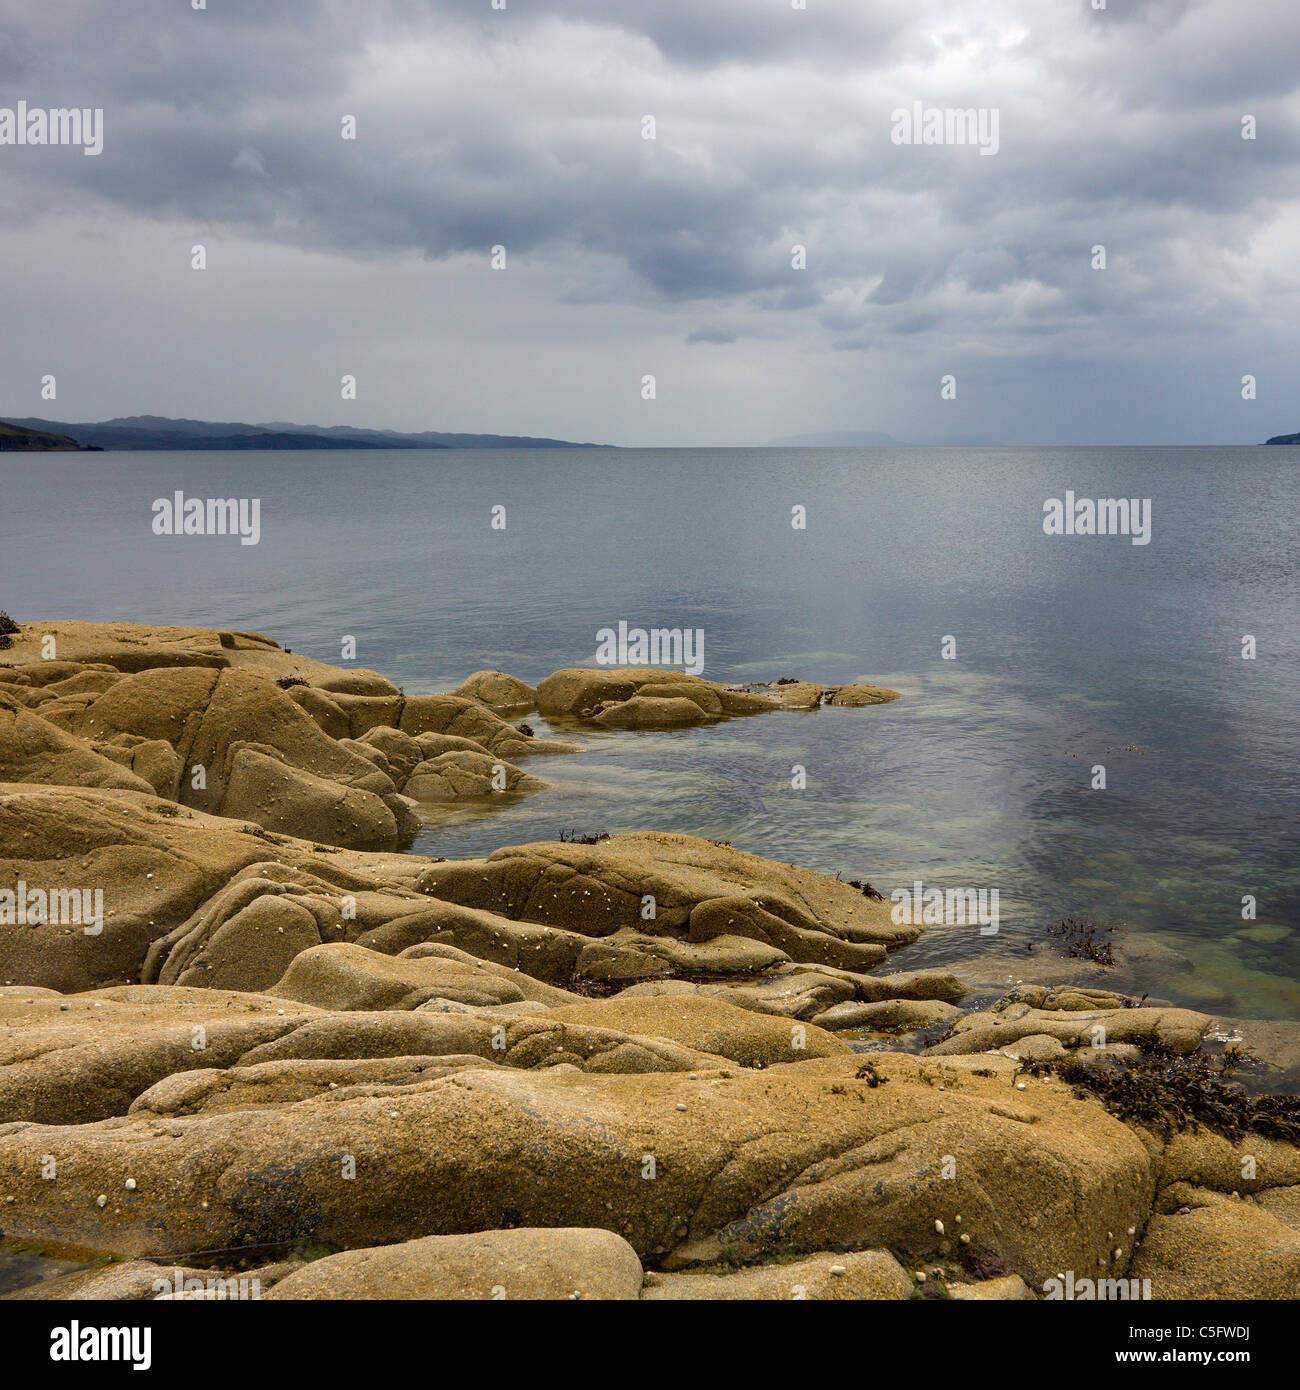 Costa rocosa, mar calma loch con nublado, amenazante cielo gris, Camas, Torrin Malag,la Isla de Skye, Escocia, Reino Unido Foto de stock